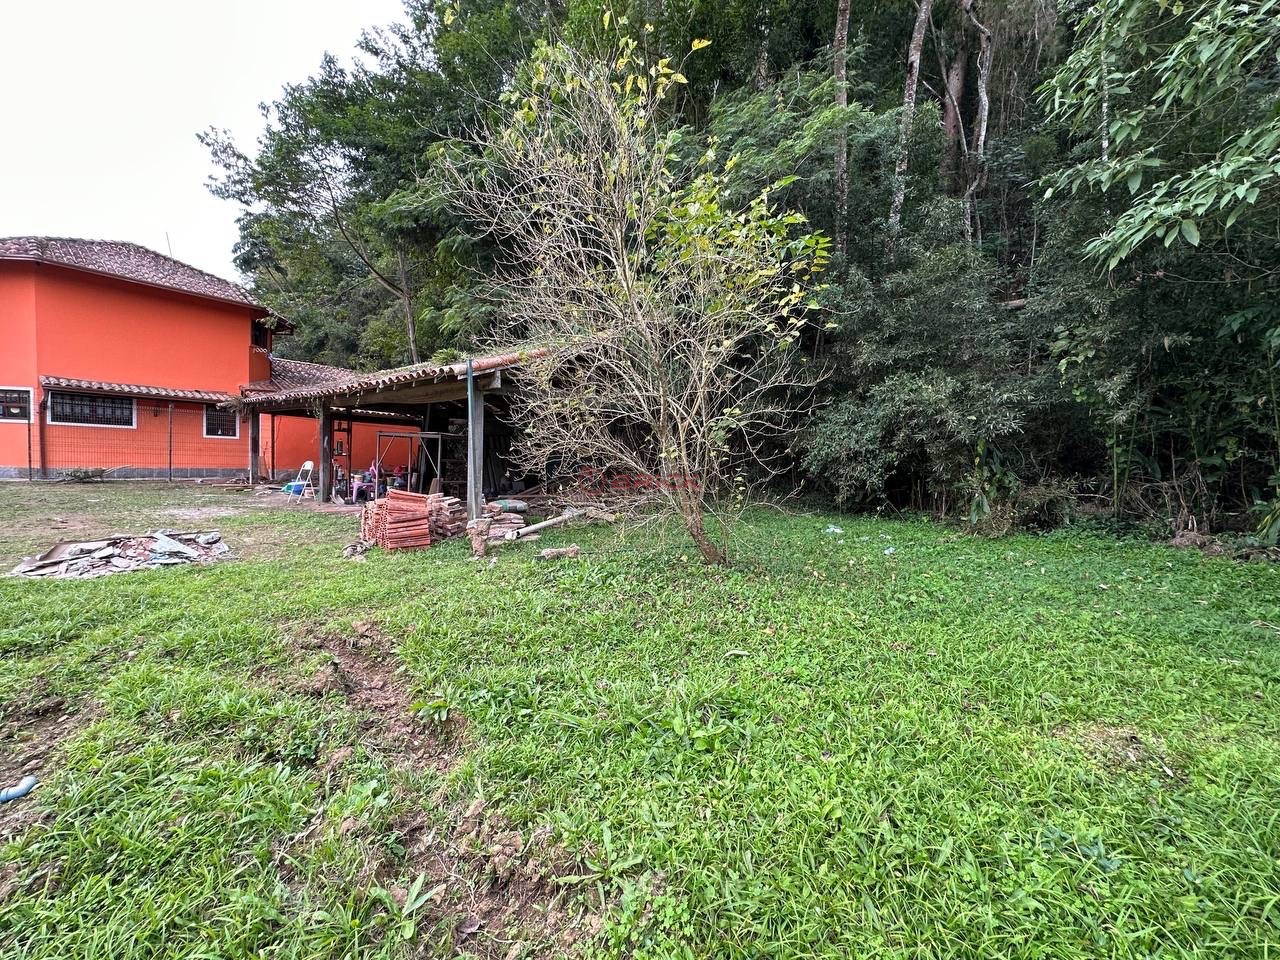 Terreno Residencial à venda em Cascata do Imbuí, Teresópolis - RJ - Foto 3